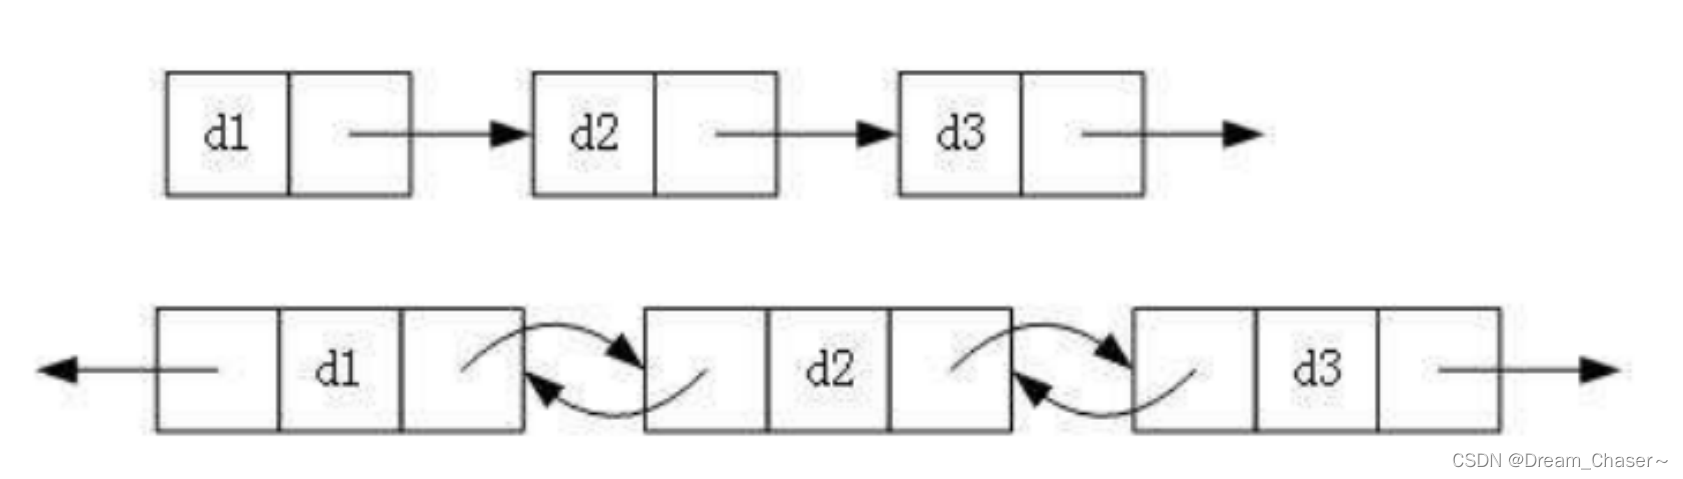 【数据结构】带头双向循环链表（小白入门必备知识）(上）